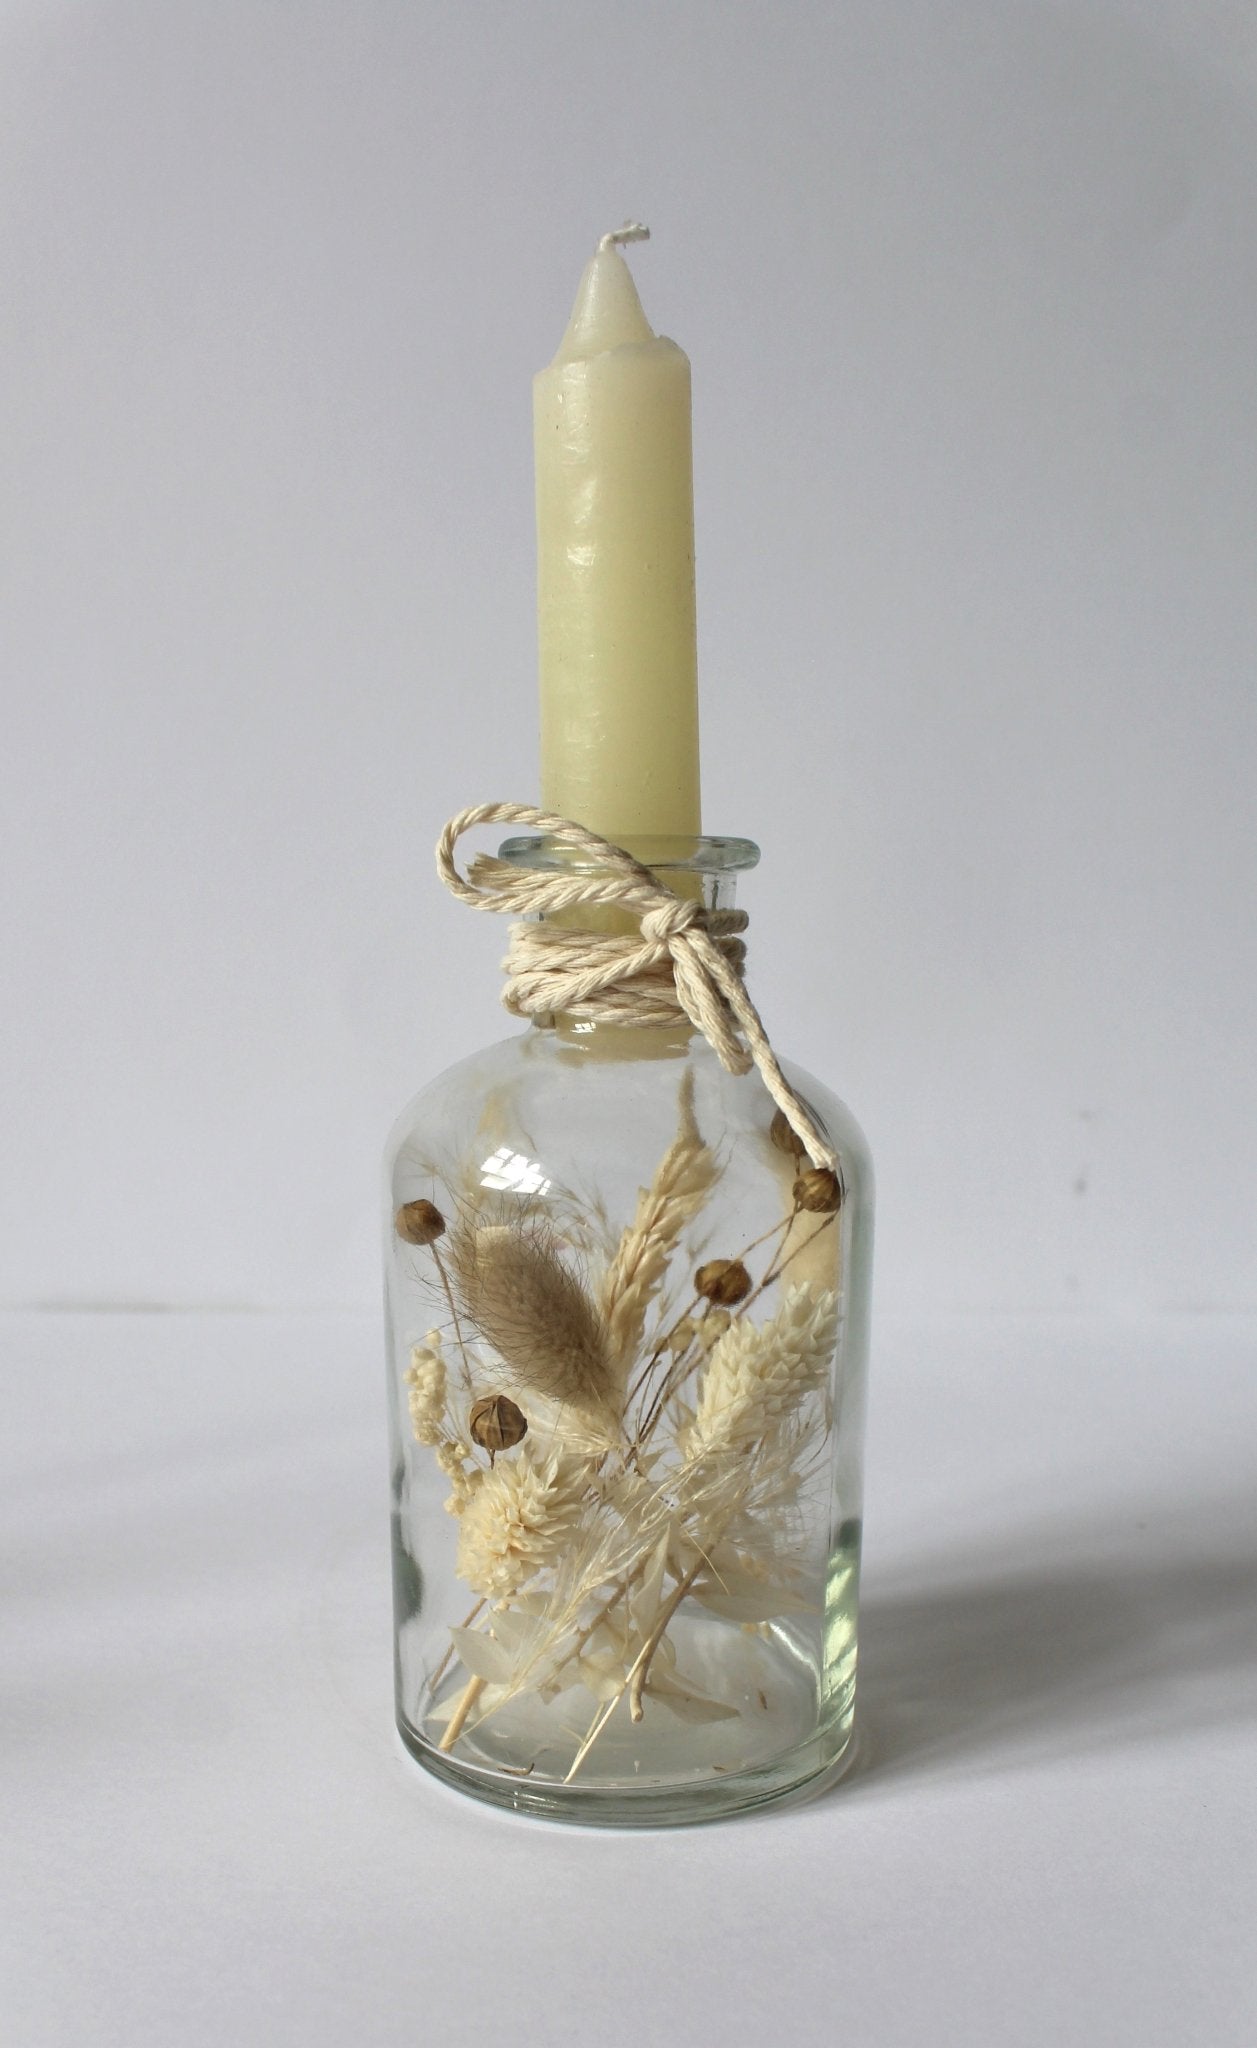 Kerzenglas mit Trockenblumen - Kerzenständer